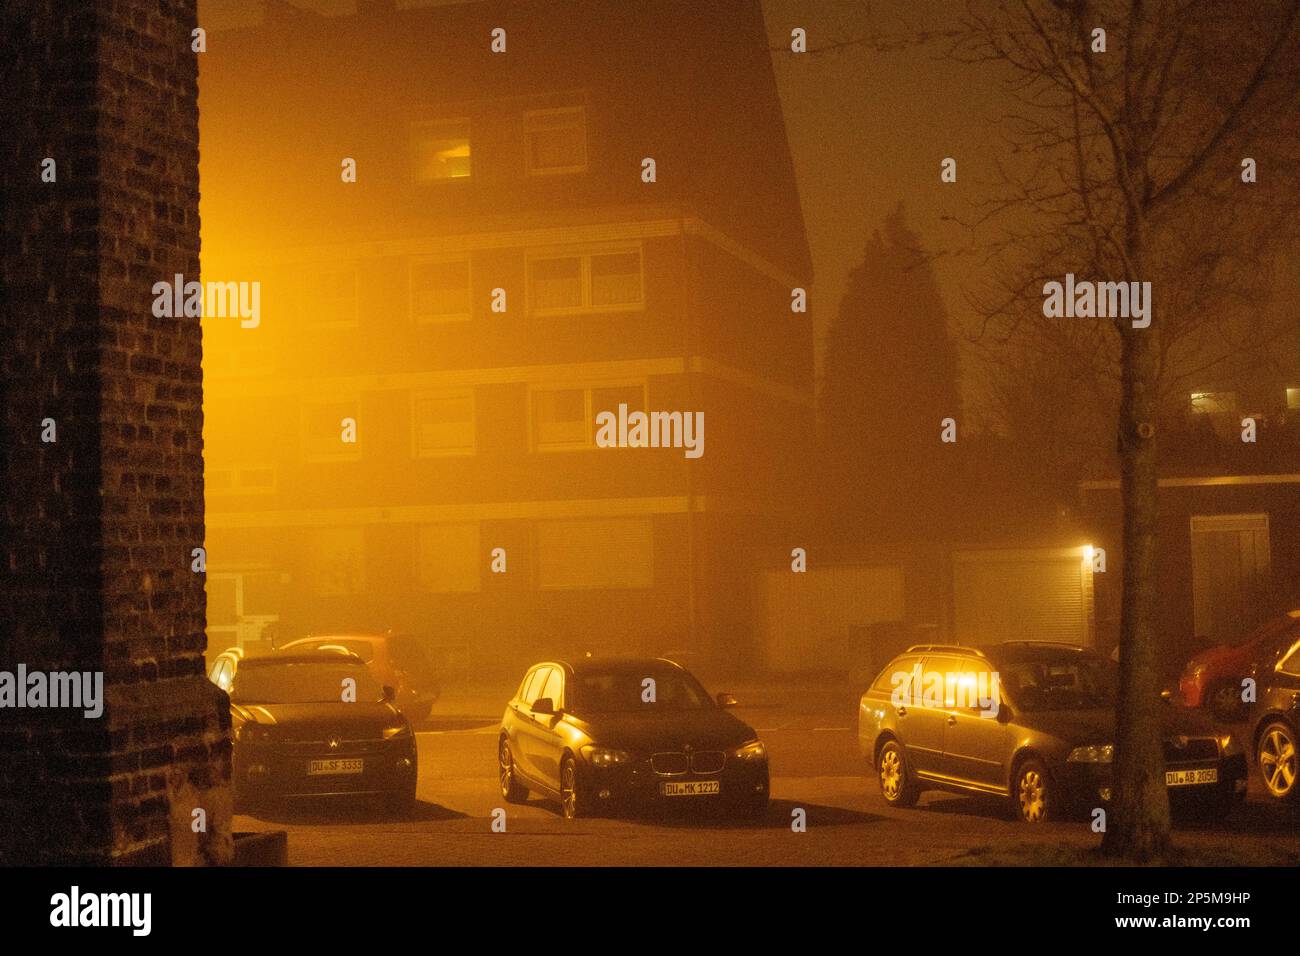 2021 04 03, Duisburg, Deutschland: Drei Autos stehen in dickem Nebel, von der Seite beleuchtet Stockfoto